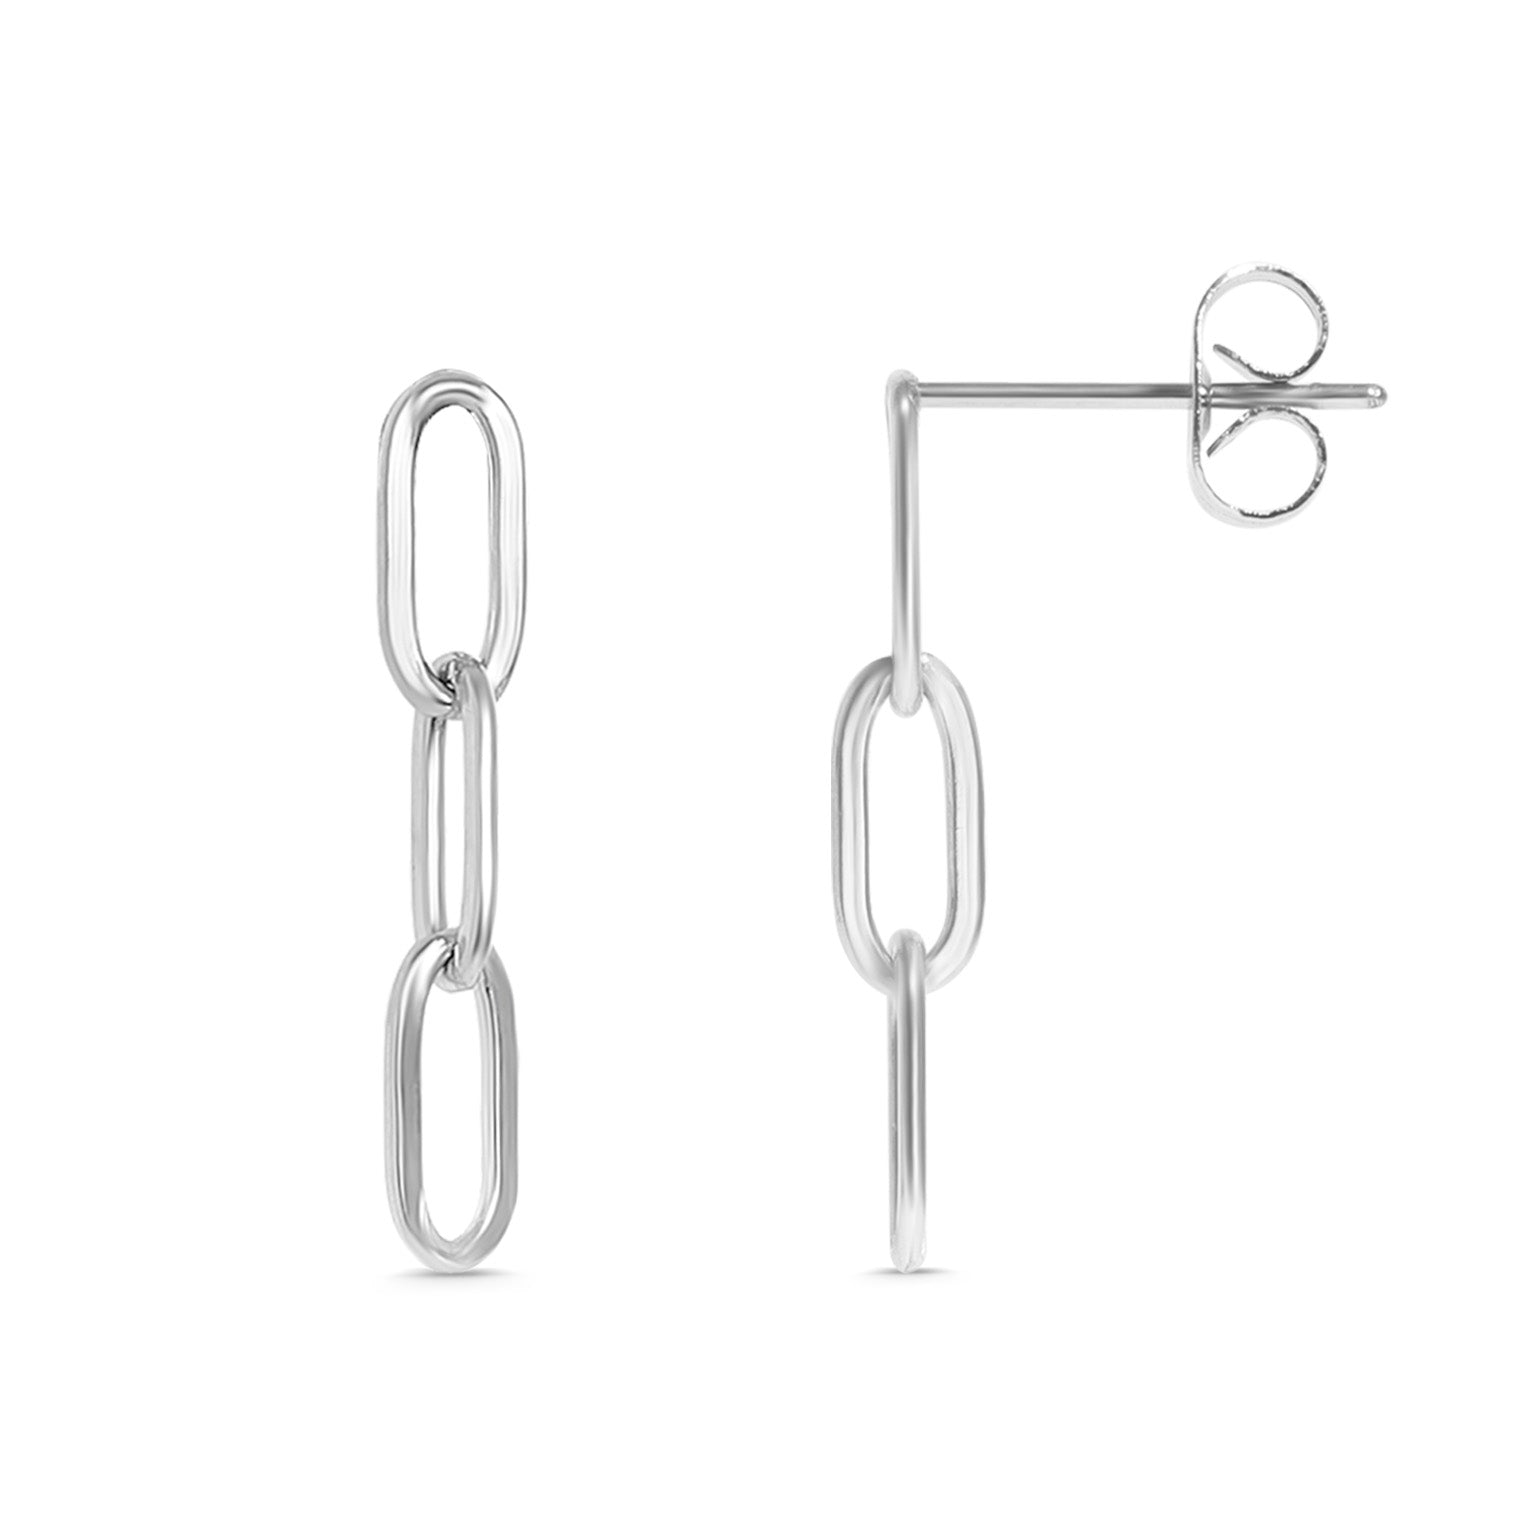 Stainless Steel Paperclip Earrings / ERJ0002